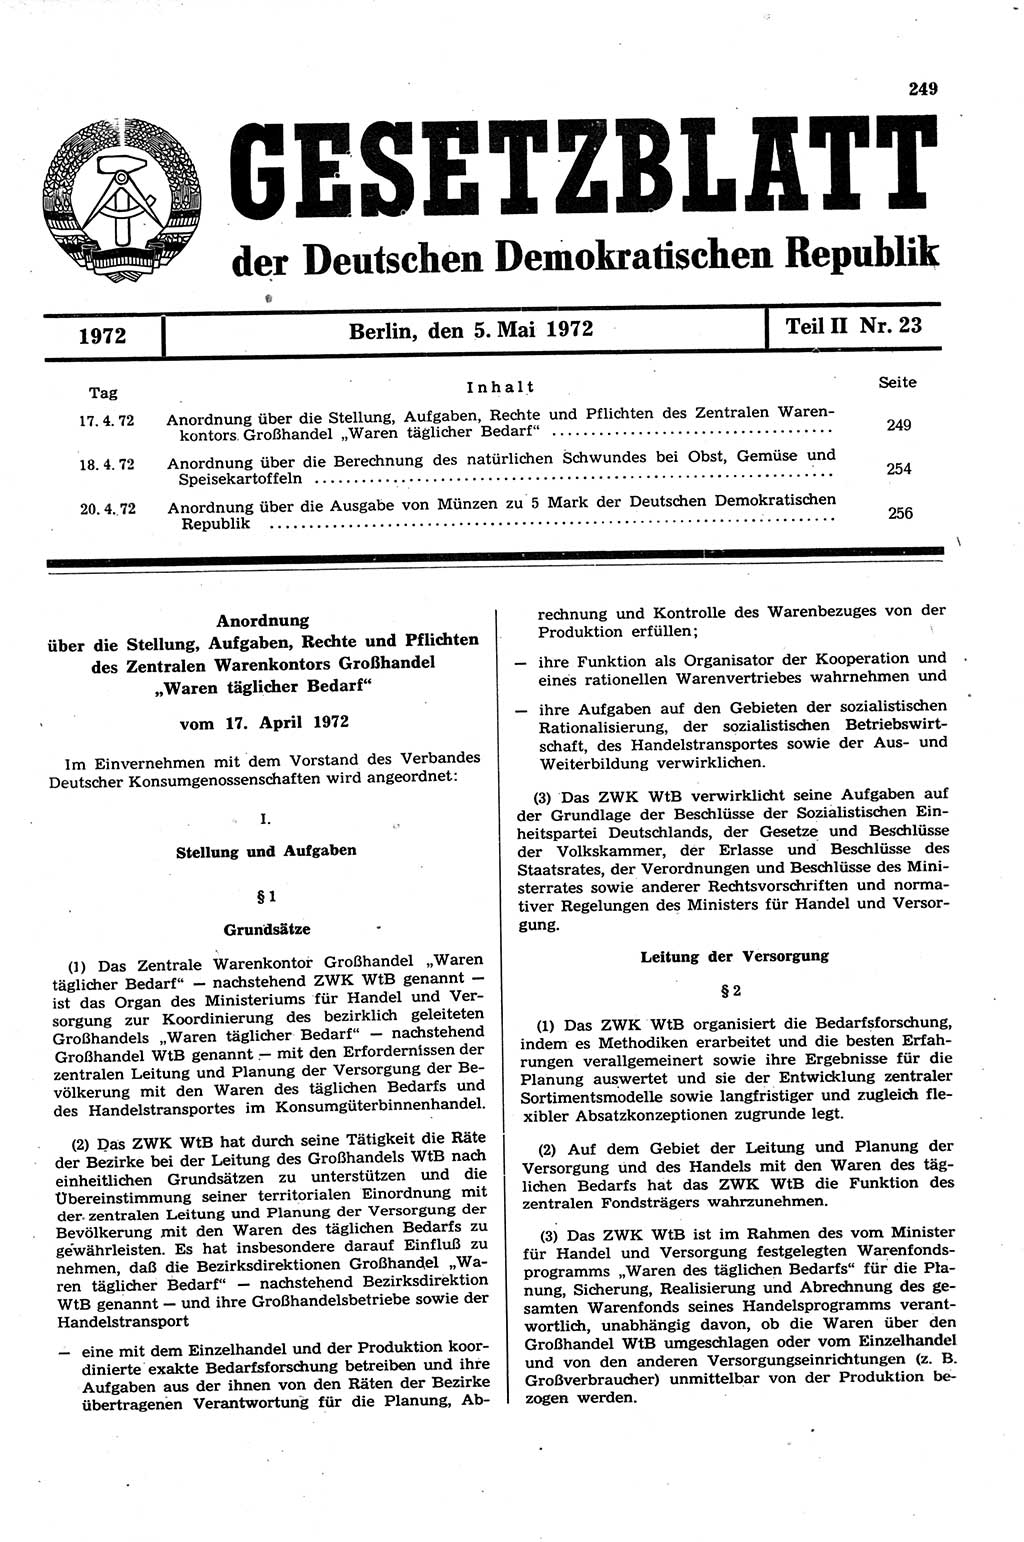 Gesetzblatt (GBl.) der Deutschen Demokratischen Republik (DDR) Teil ⅠⅠ 1972, Seite 249 (GBl. DDR ⅠⅠ 1972, S. 249)